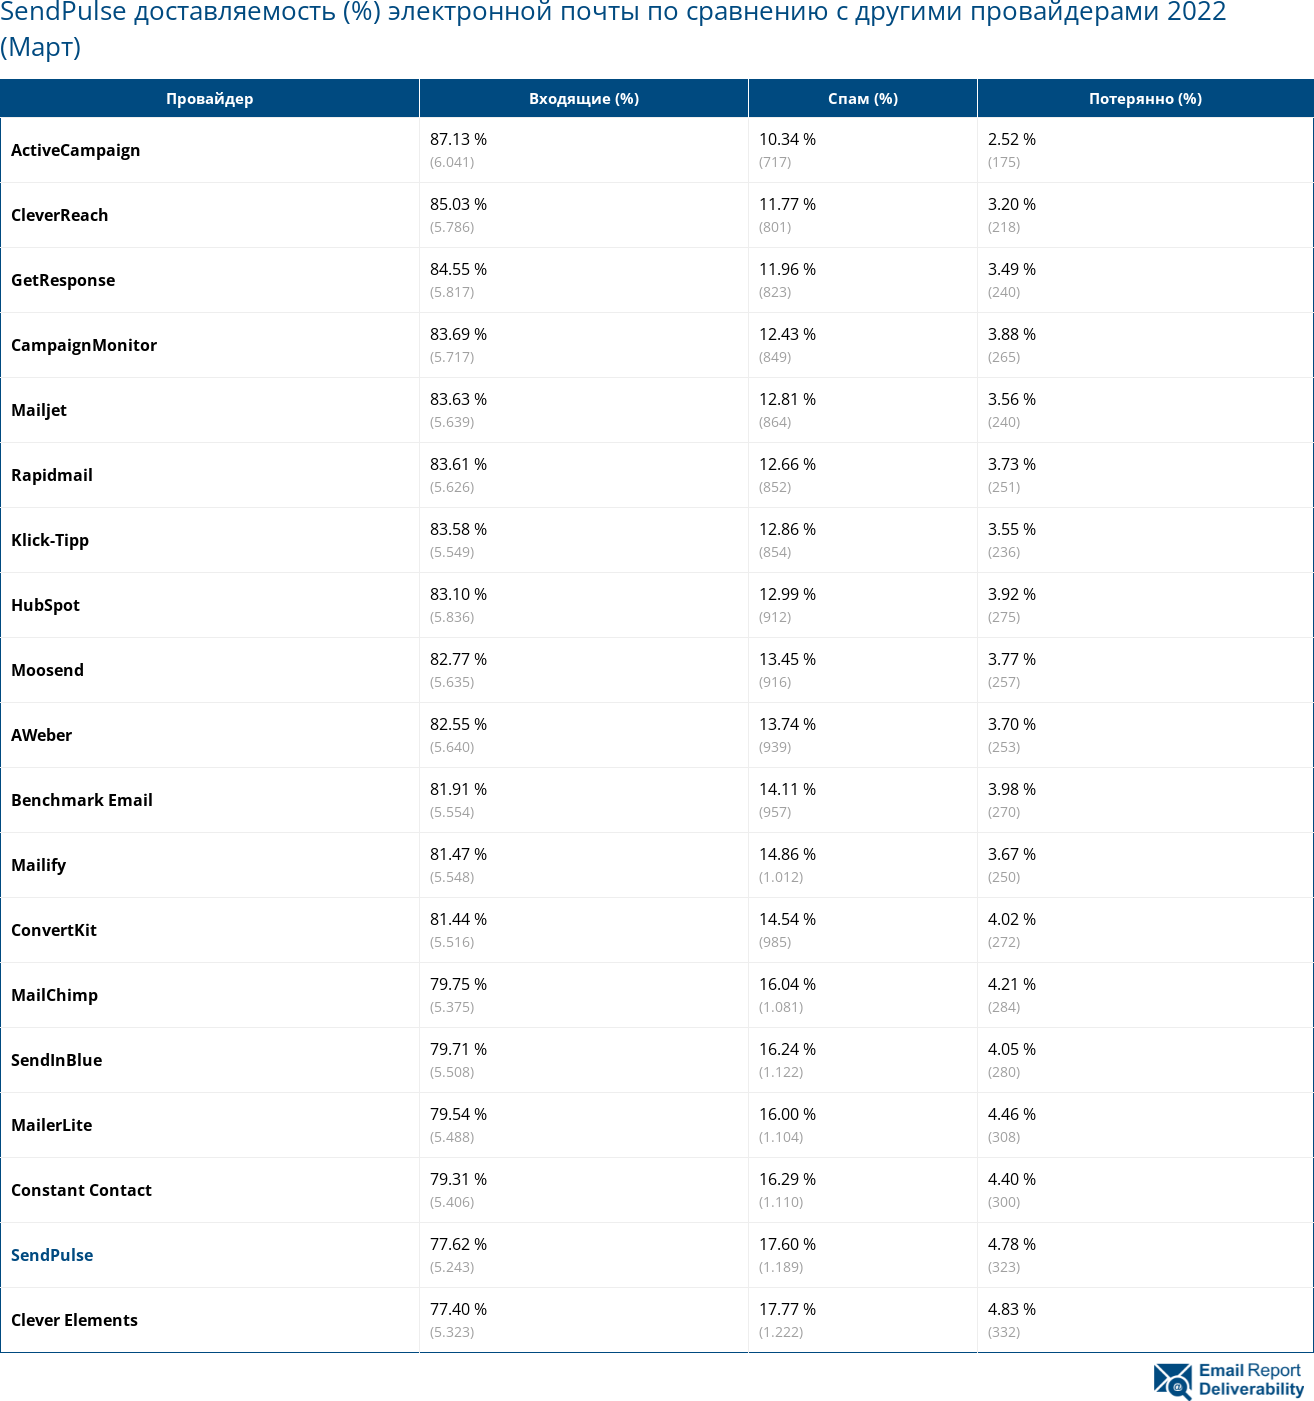 SendPulse доставляемость (%) электронной почты по сравнению с другими провайдерами 2022 (Март)